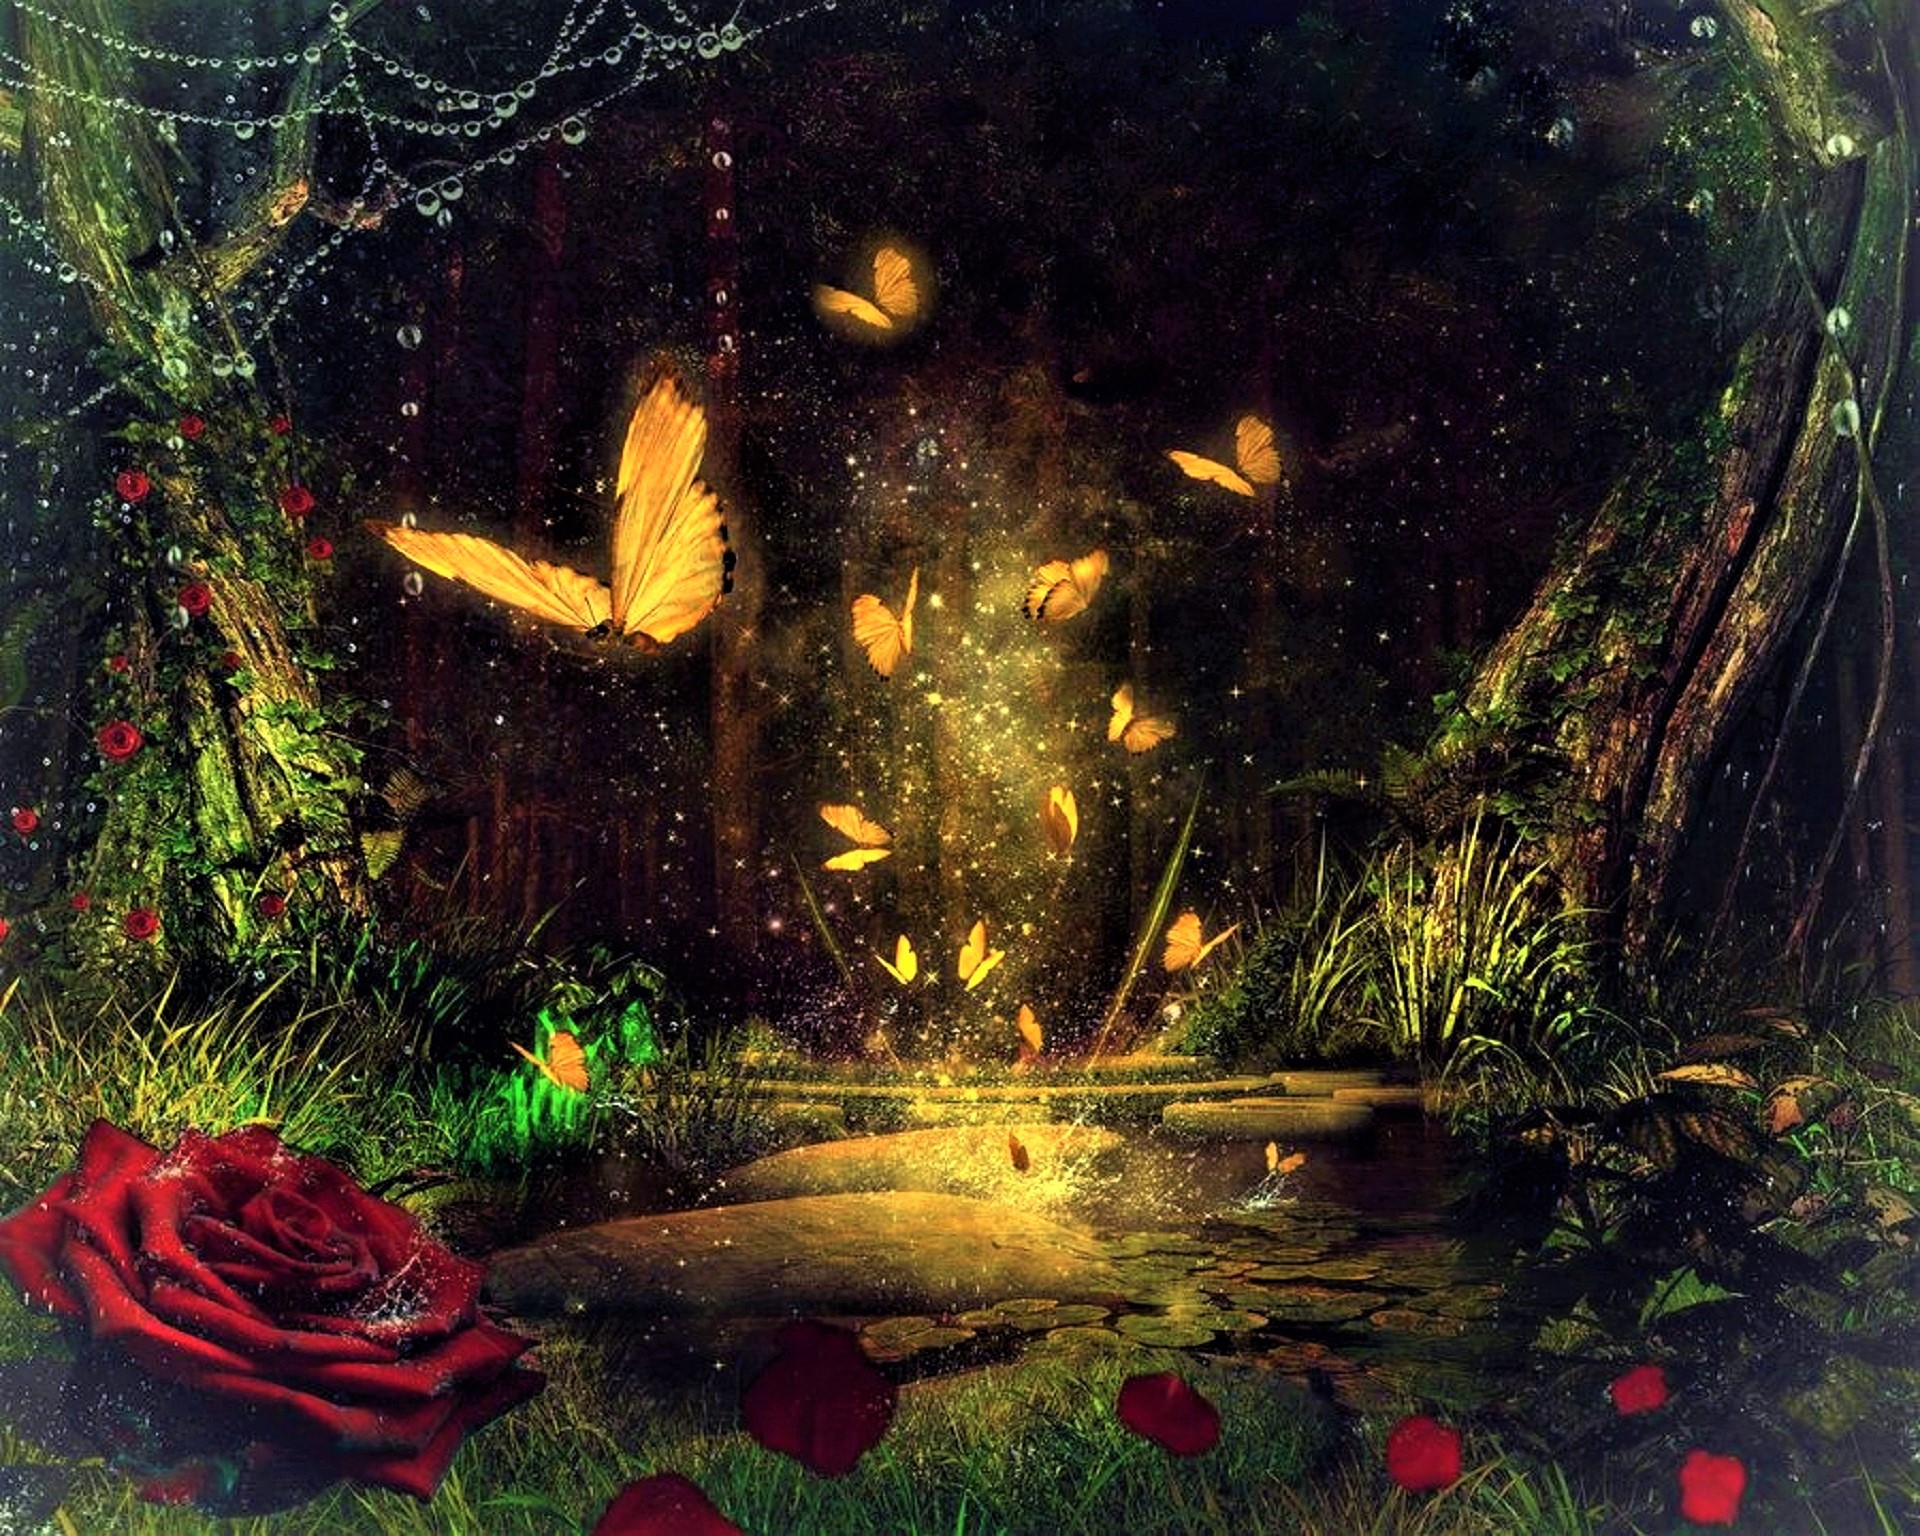 Скачать обои бесплатно Магия, Лес, Роза, Бабочка, Фантазия, Художественные картинка на рабочий стол ПК